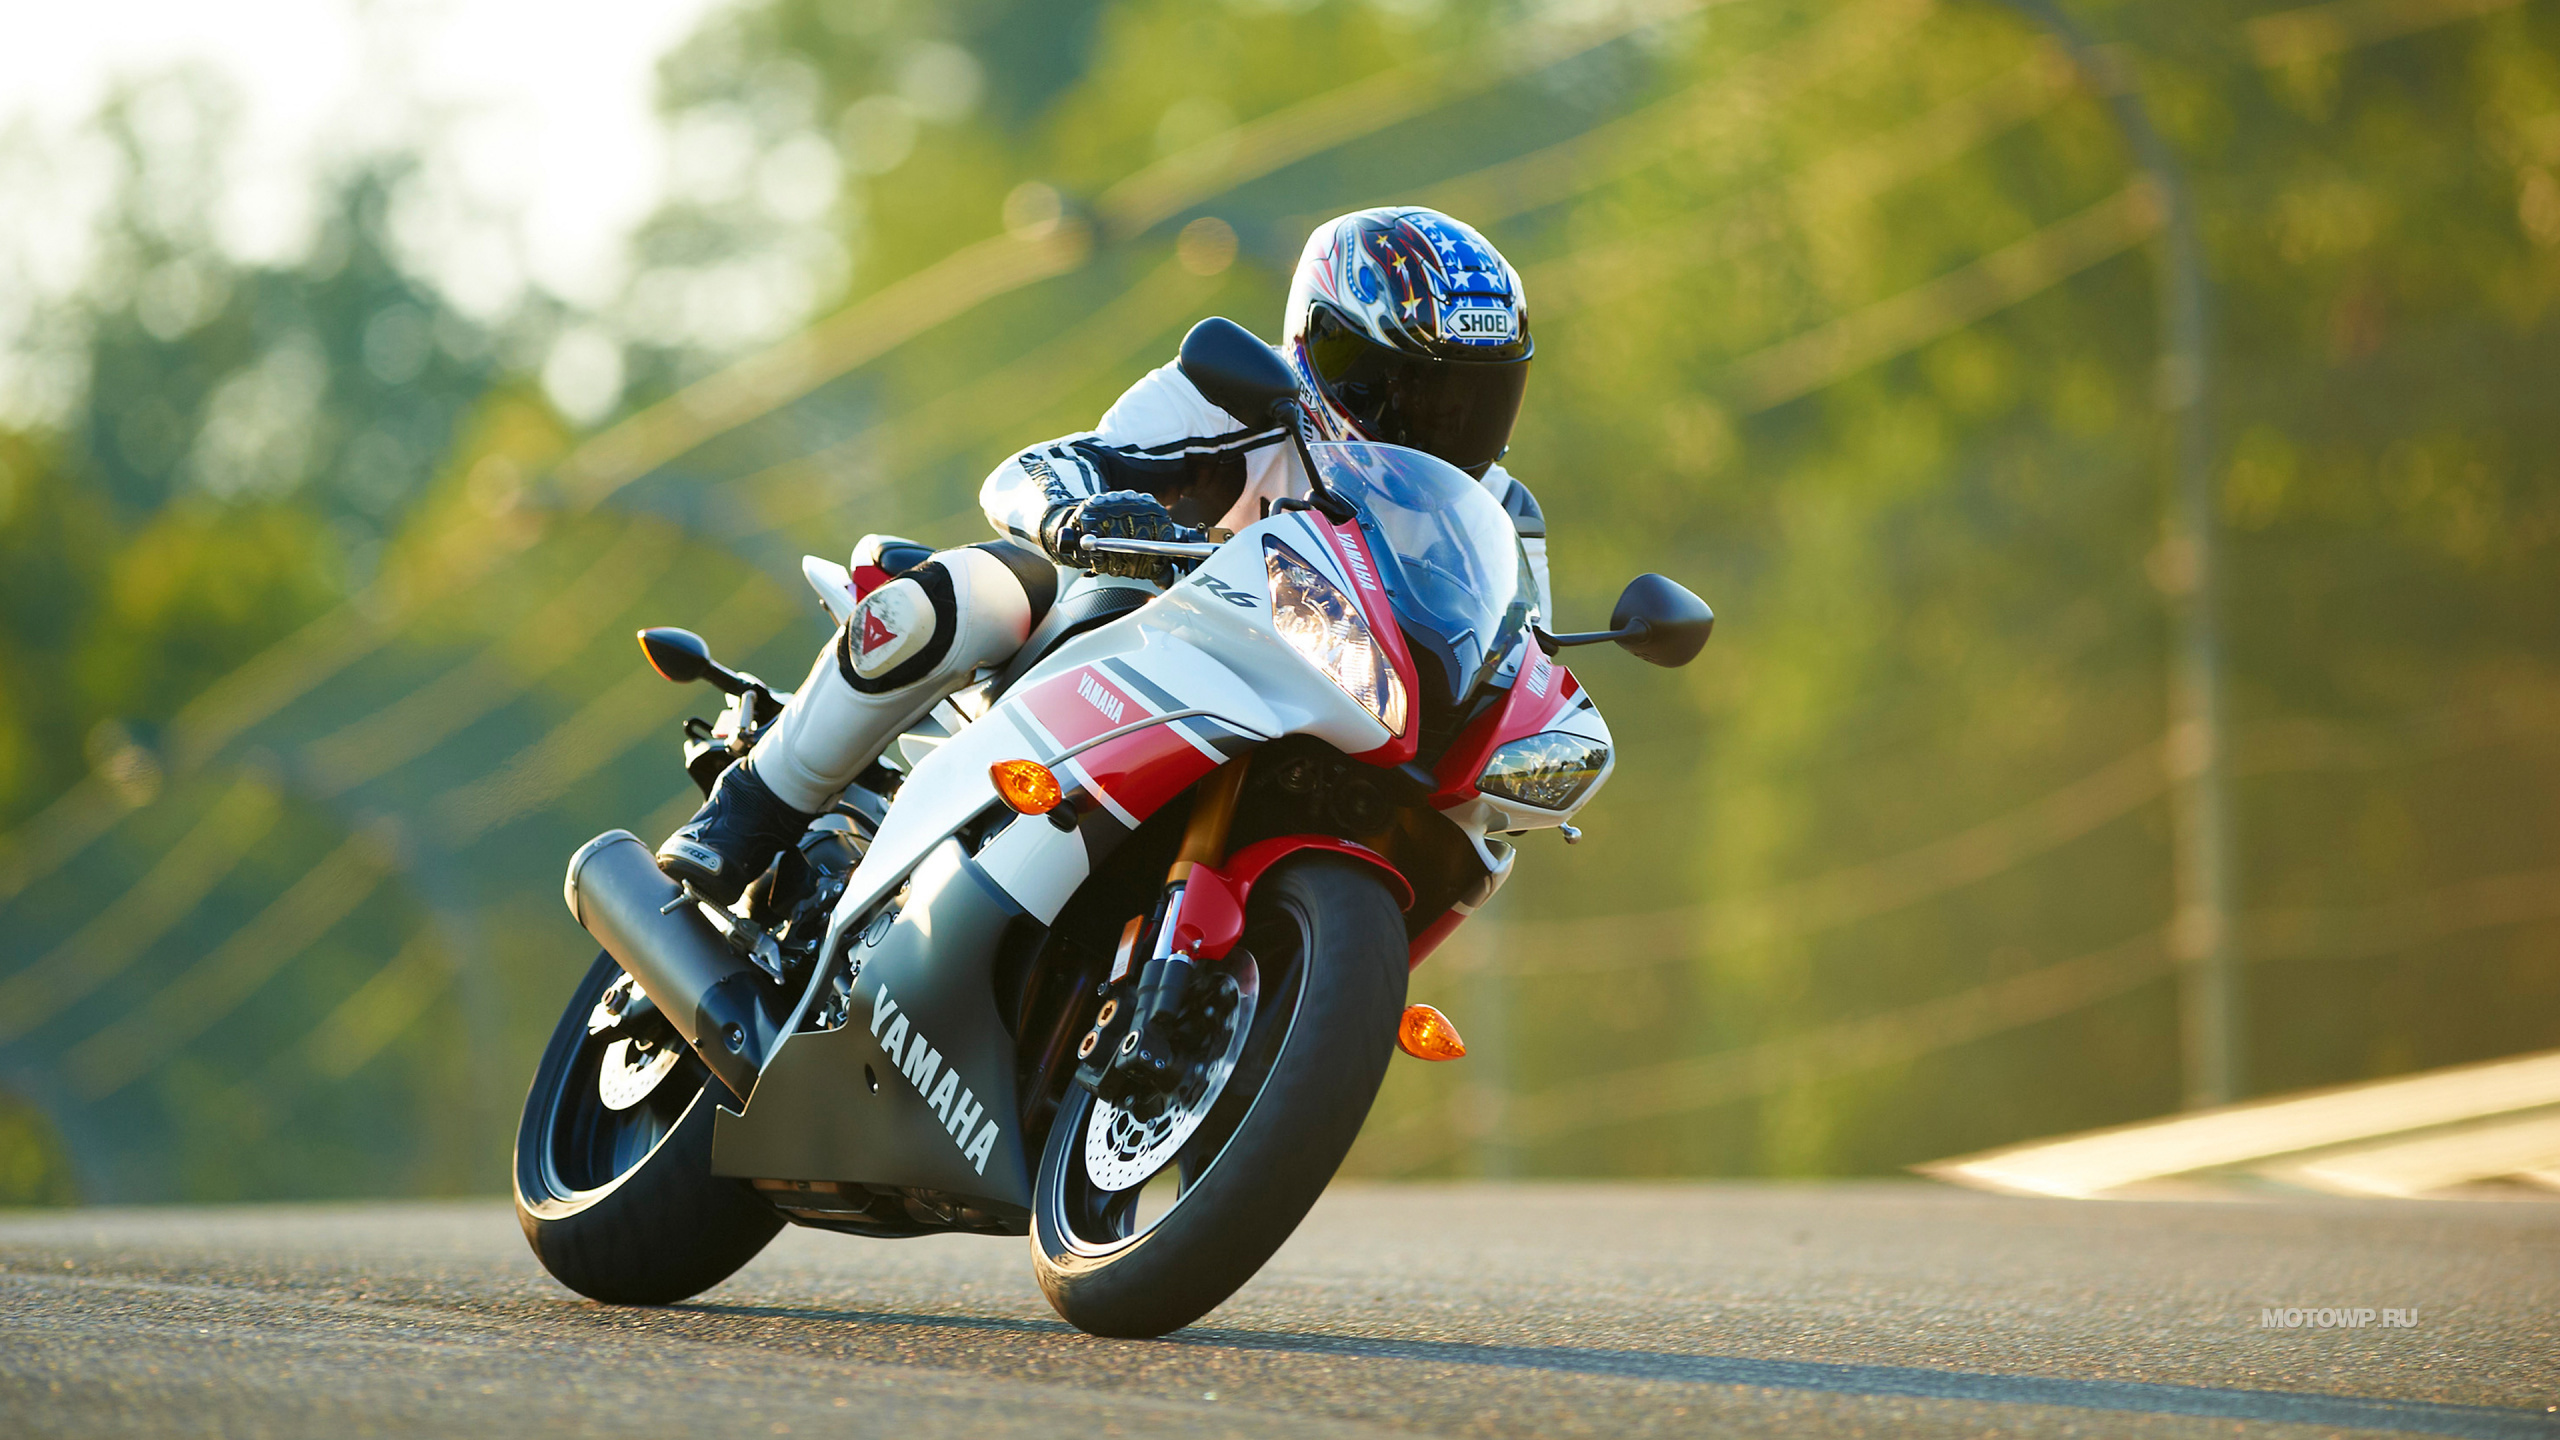 超级赛车, 摩托车头盔, 汽车赛车, 赛道, 摩托车赛车 壁纸 2560x1440 允许